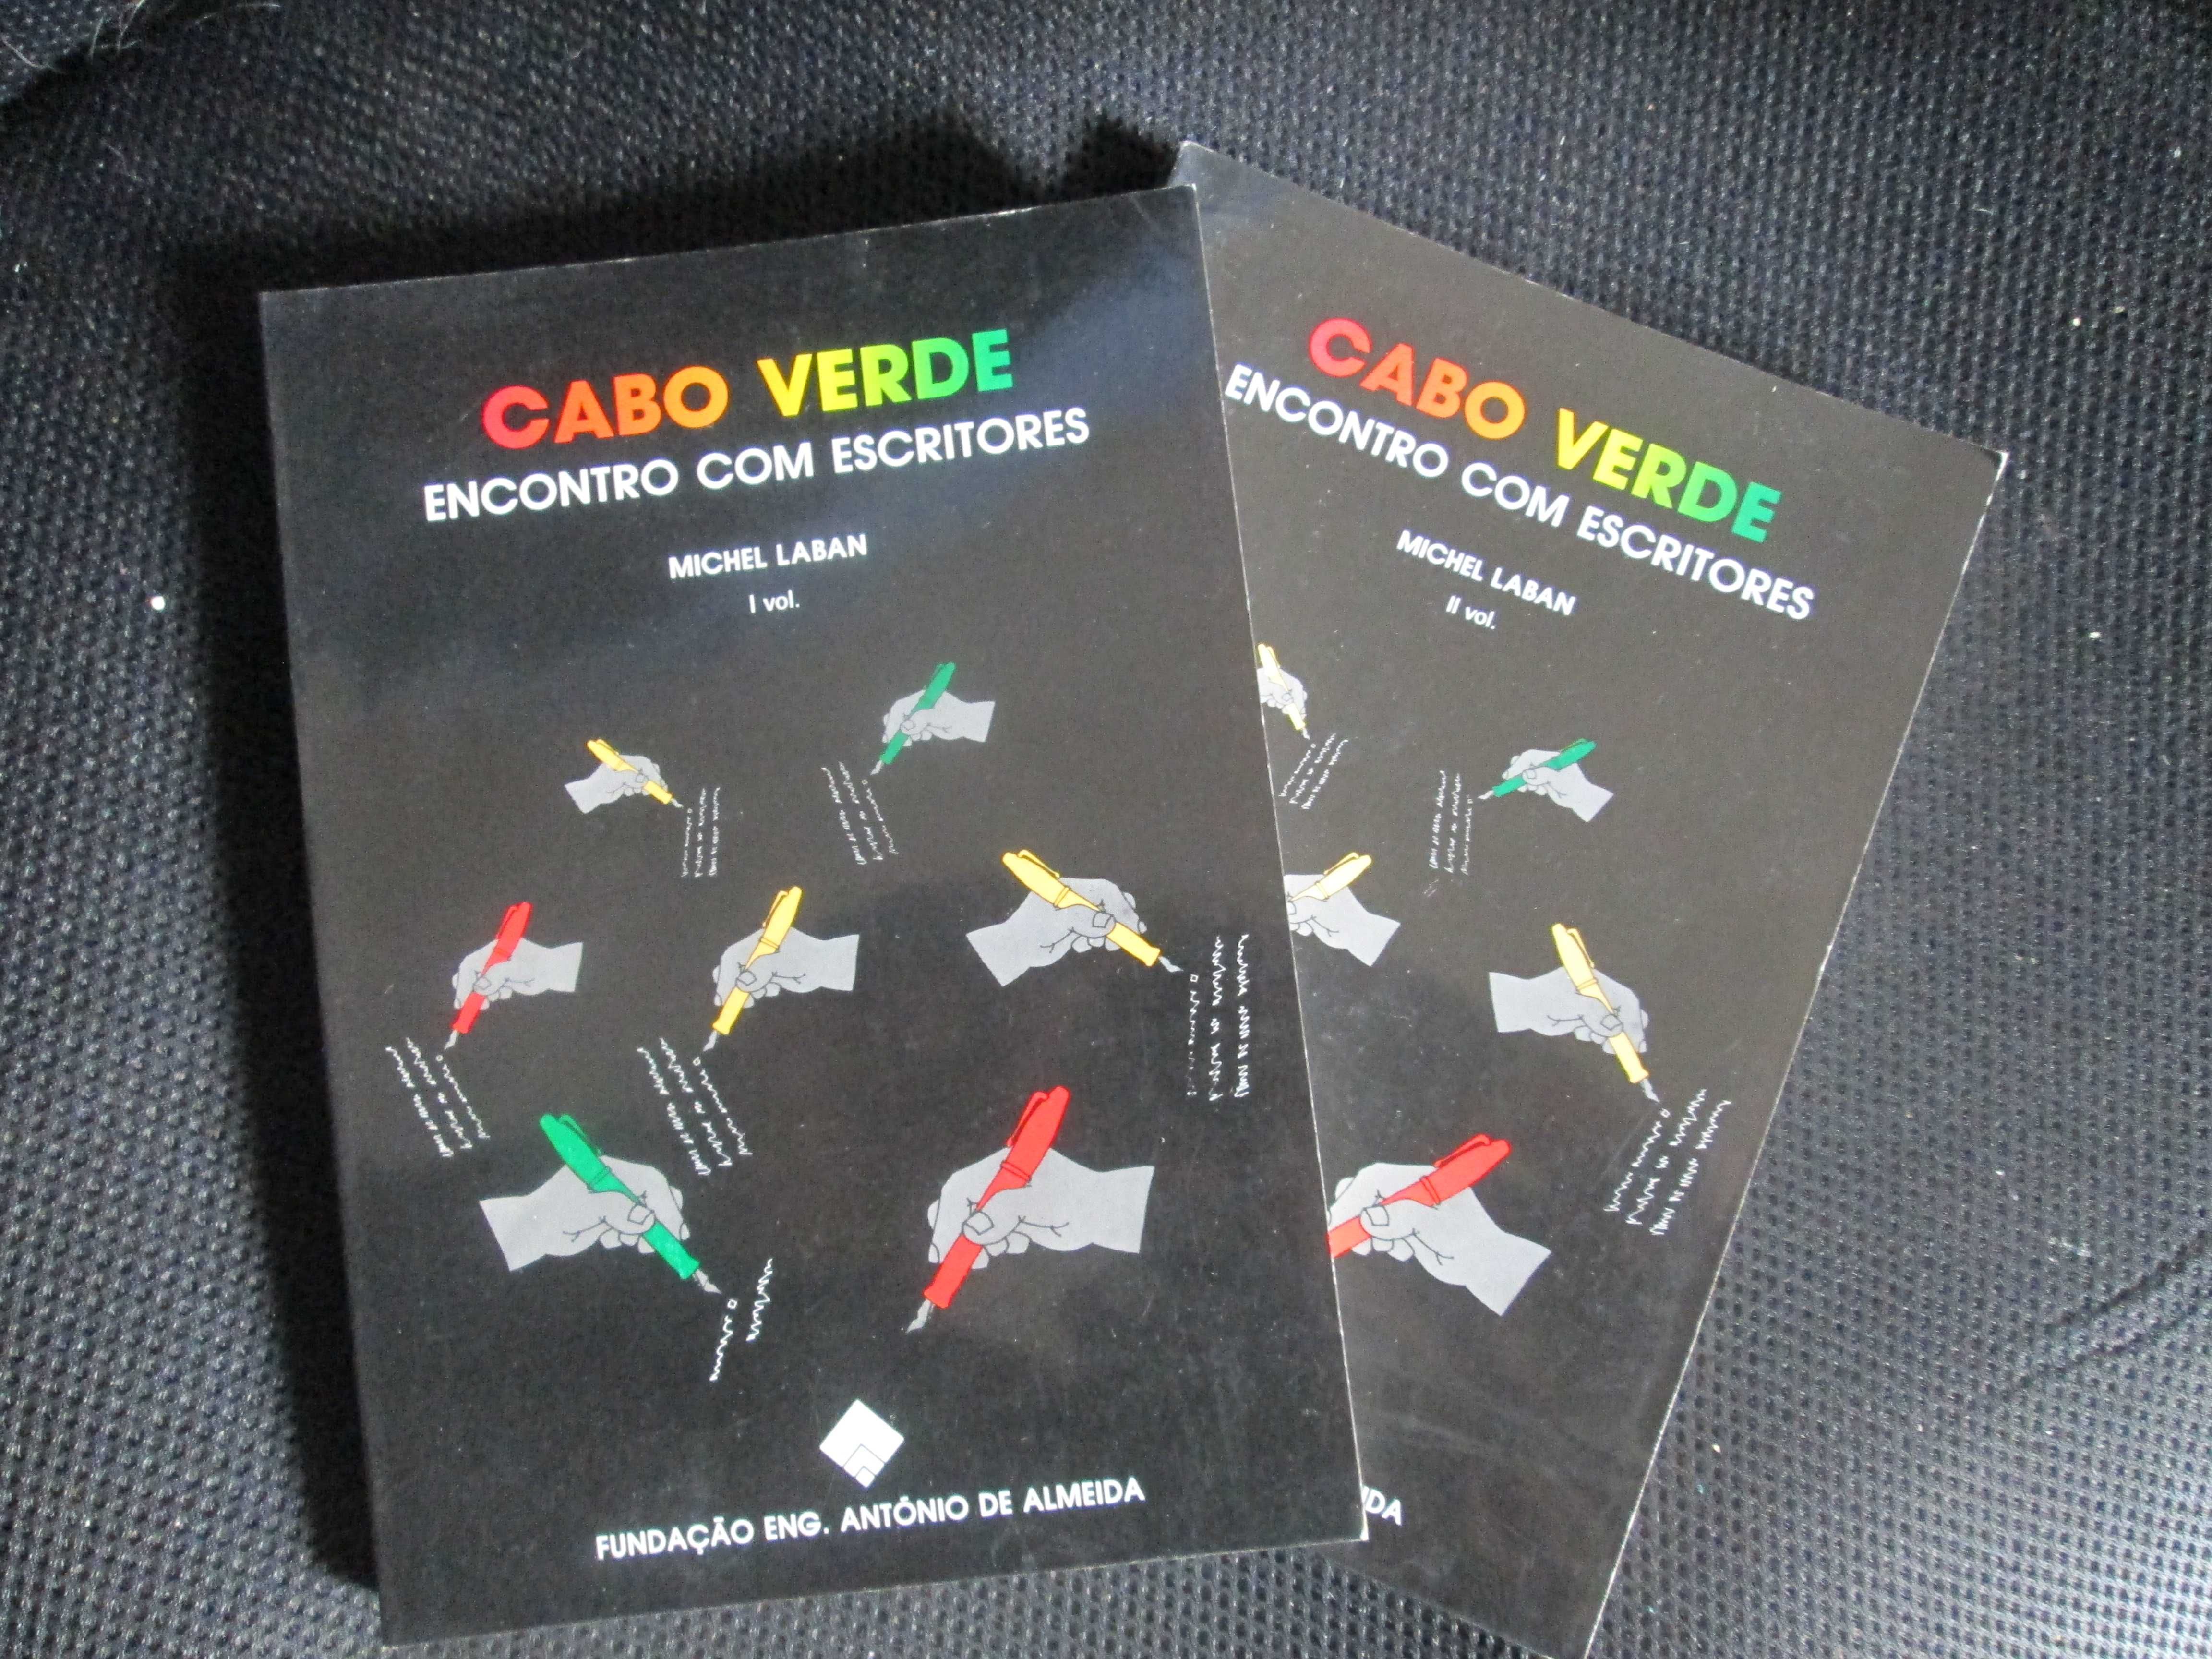 Conversas com Escritores - Cabo Verde, Michel Laban